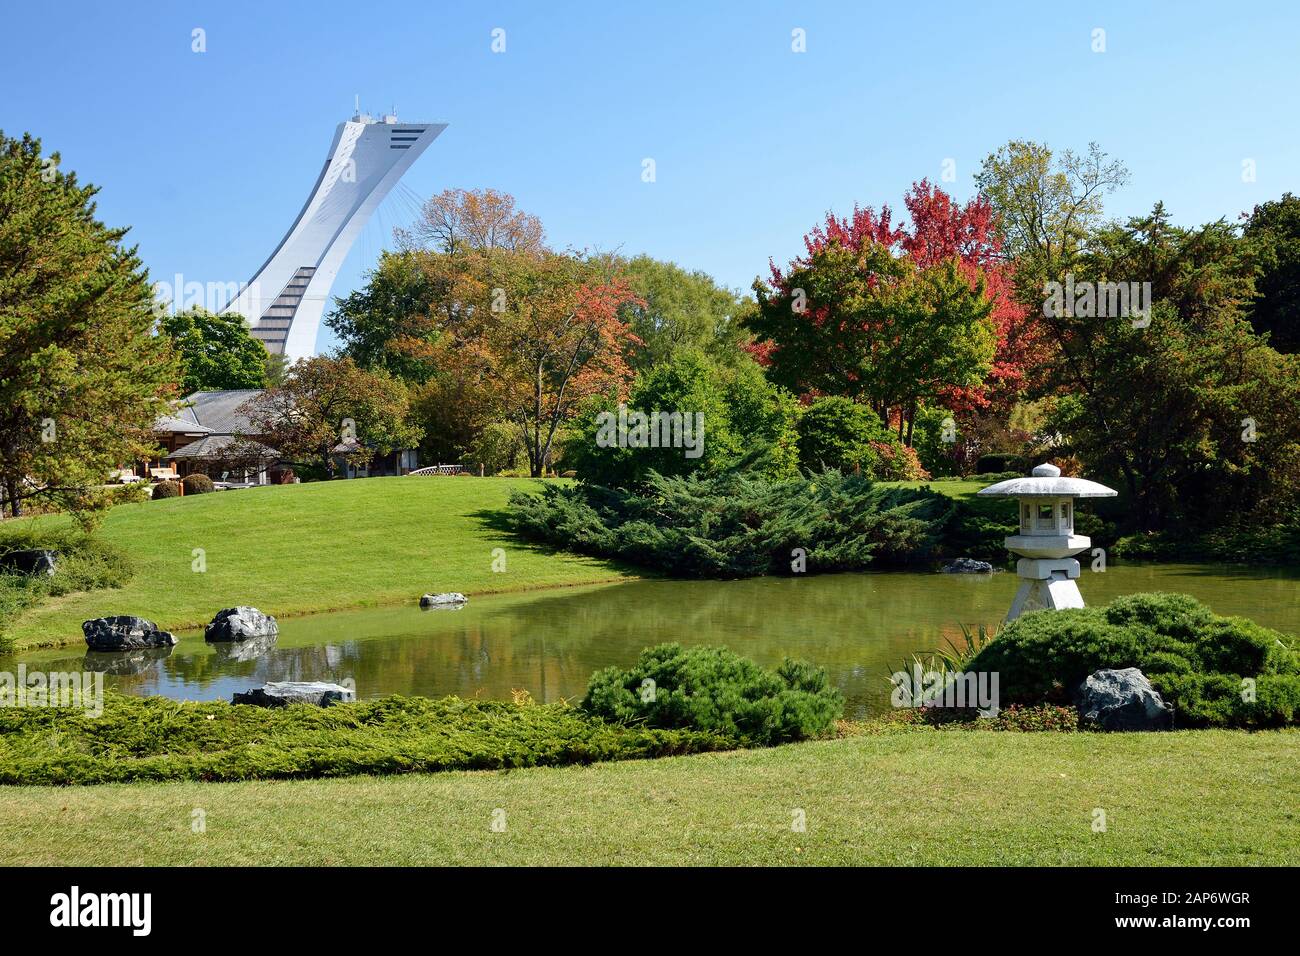 Jardin botanique et tour olympique en arrière-plan, Montréal (Québec - Canada) Banque D'Images